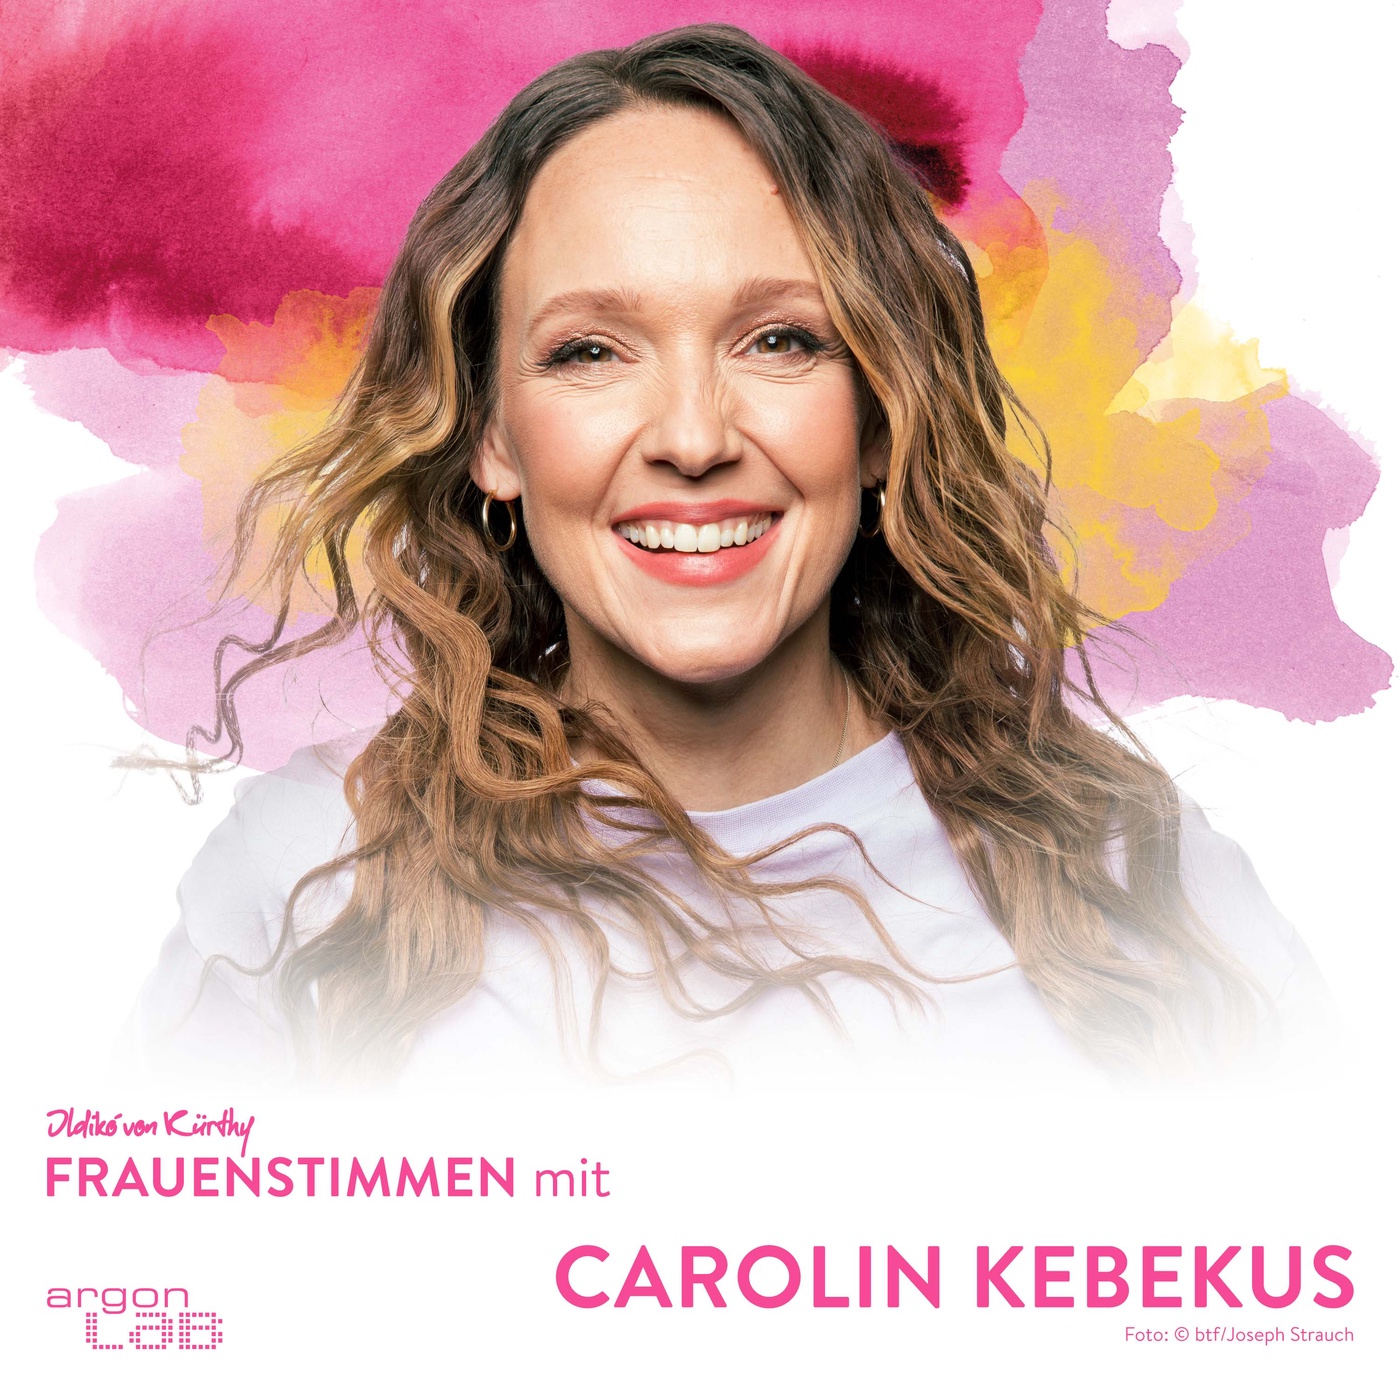 Carolin Kebekus und die Frage nach feministischer Glaubwürdigkeit